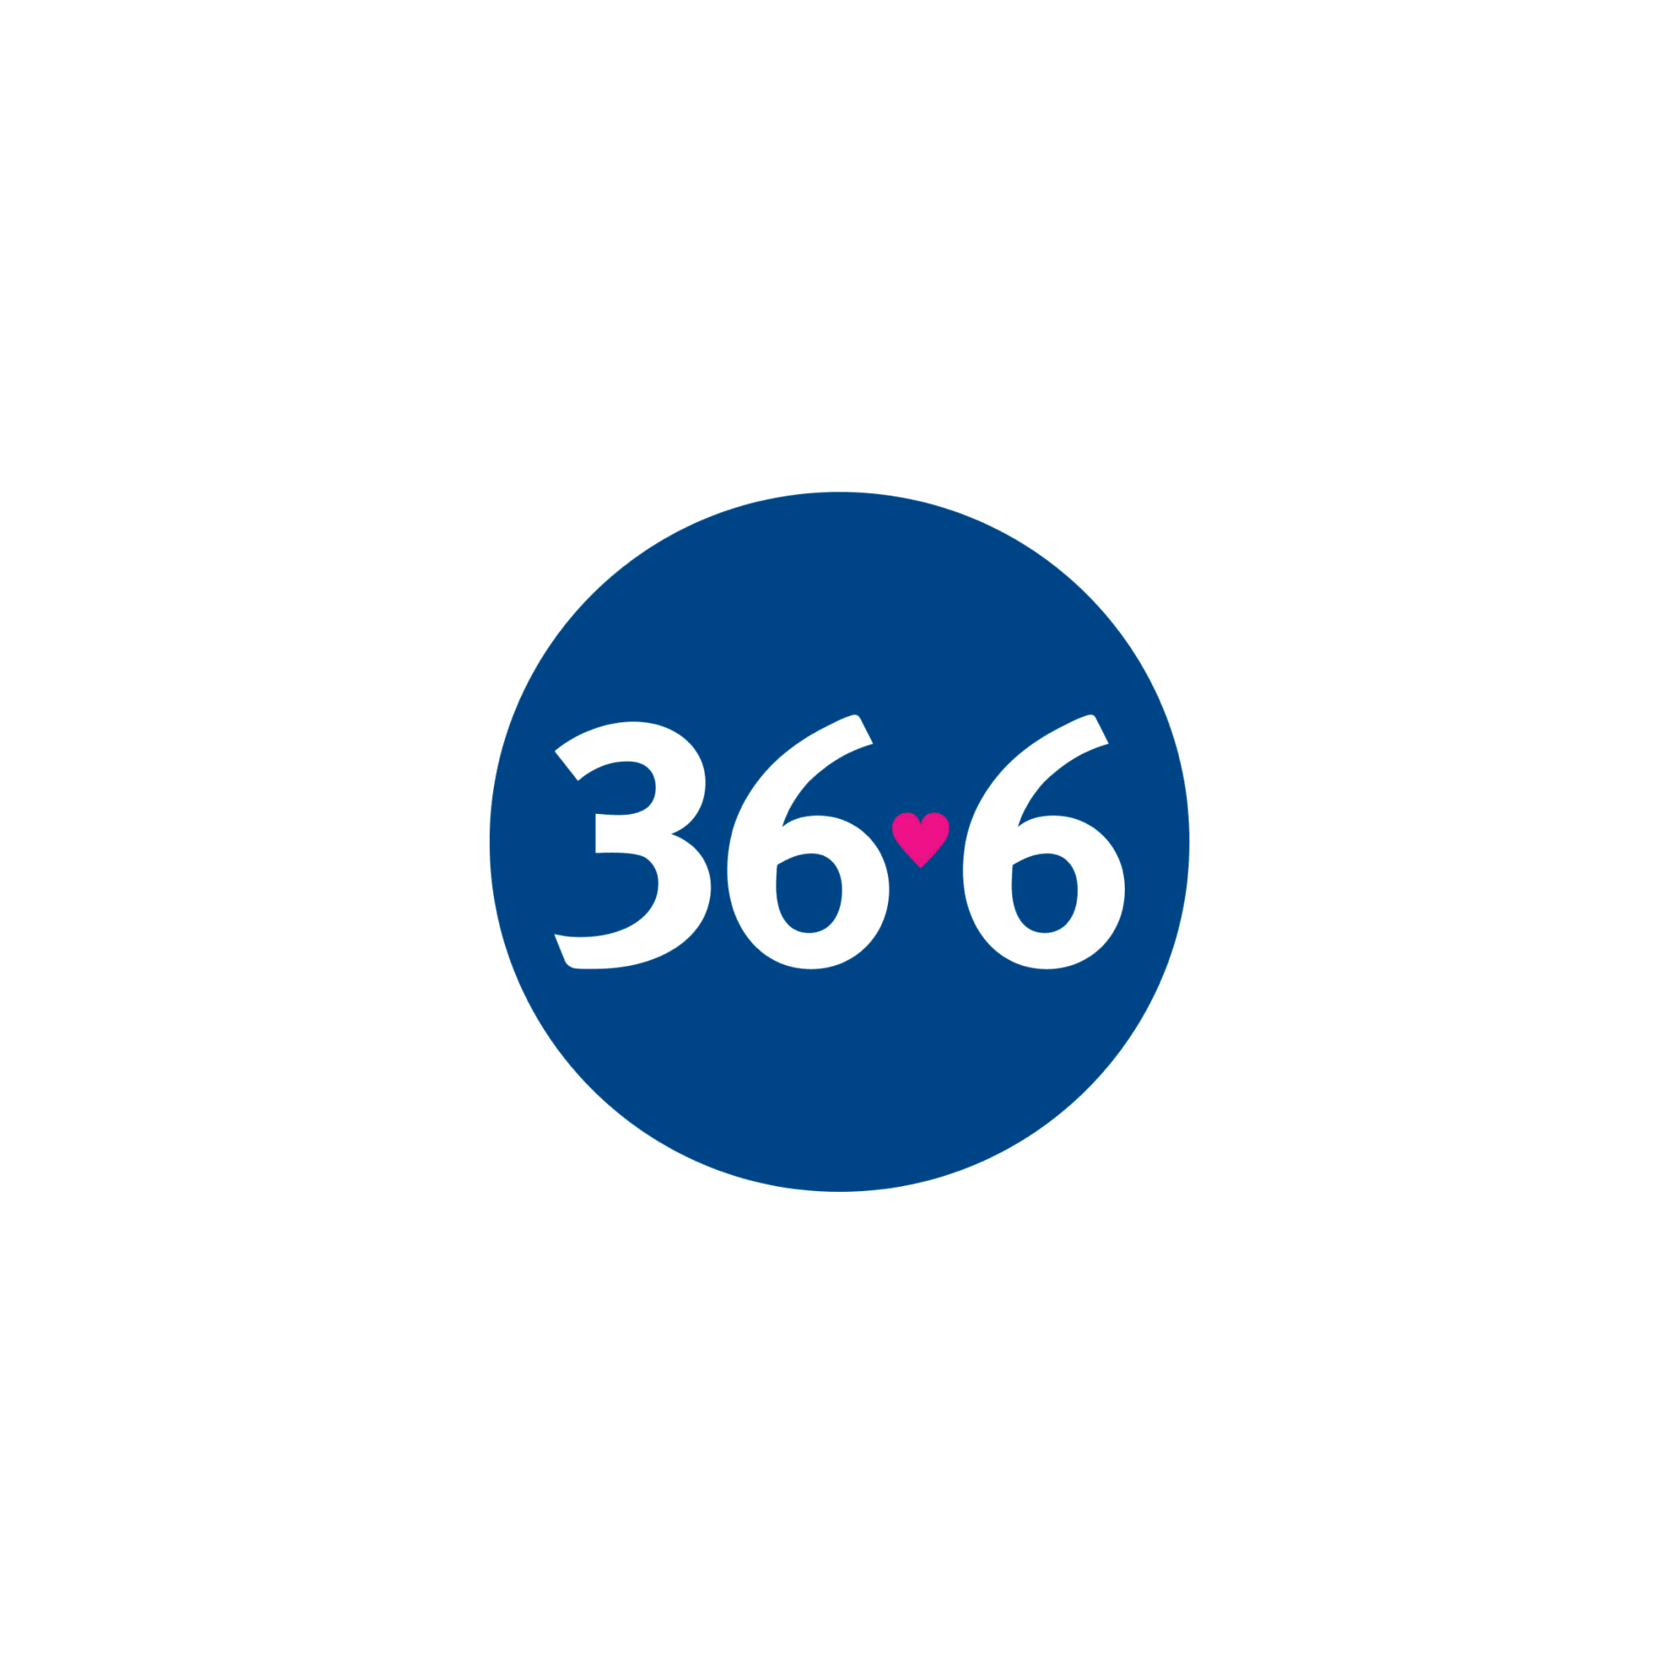 36 6 интернет аптека. Аптека 36.6 лого. ПАО аптечная сеть 36 6. 36б6 аптека логотип. Логотип 36.6.